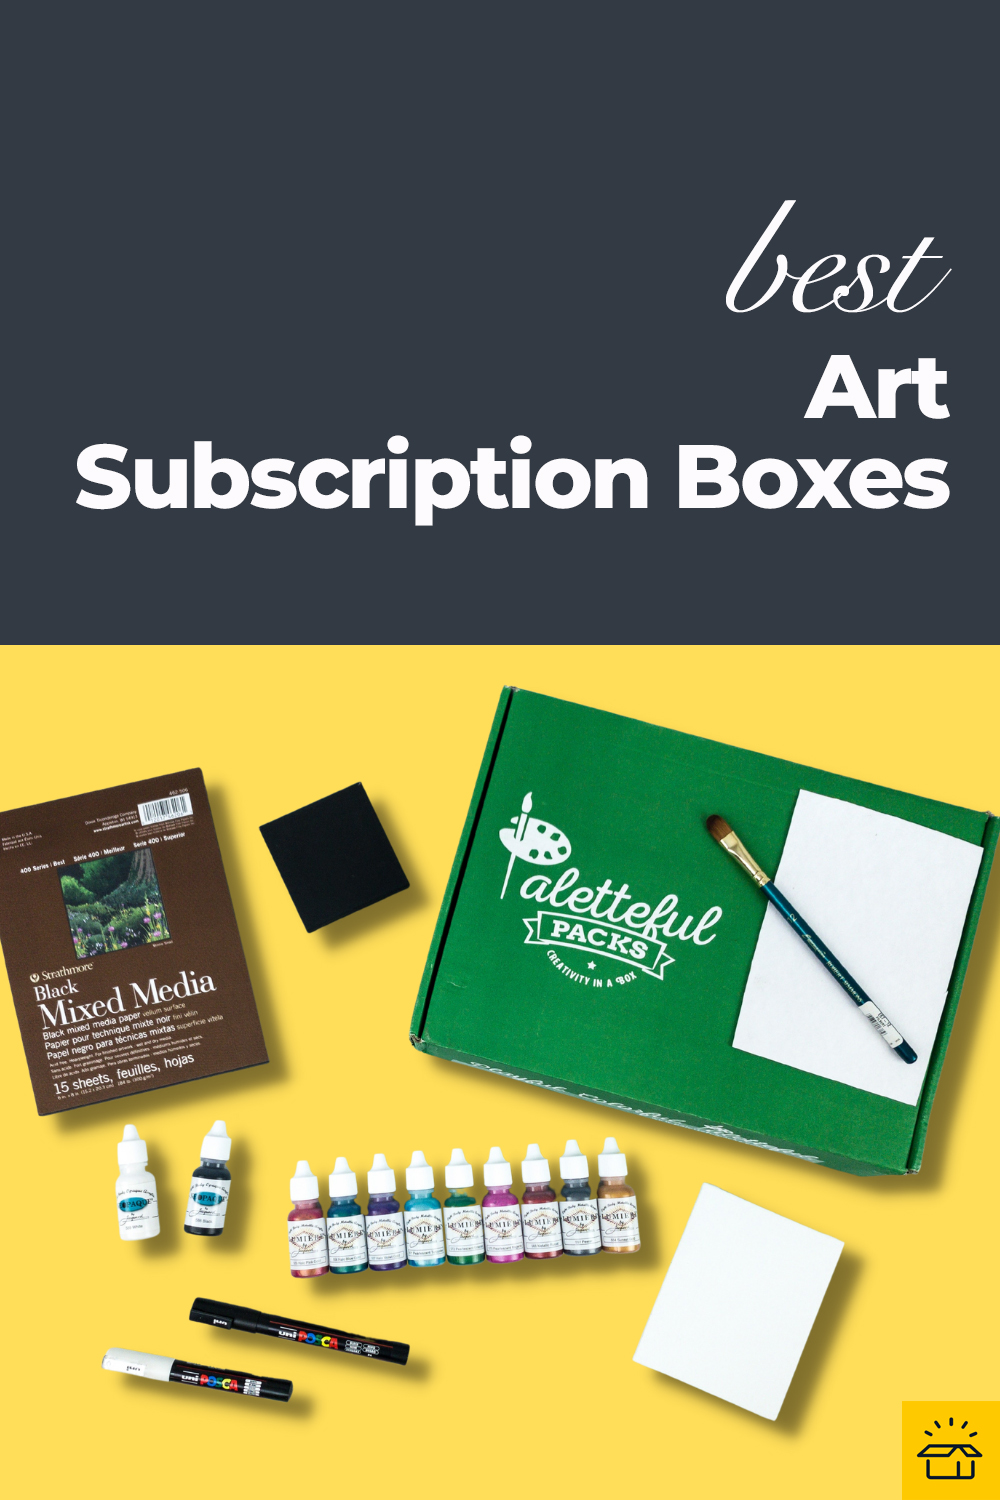 8 Best Art Subscription Boxes